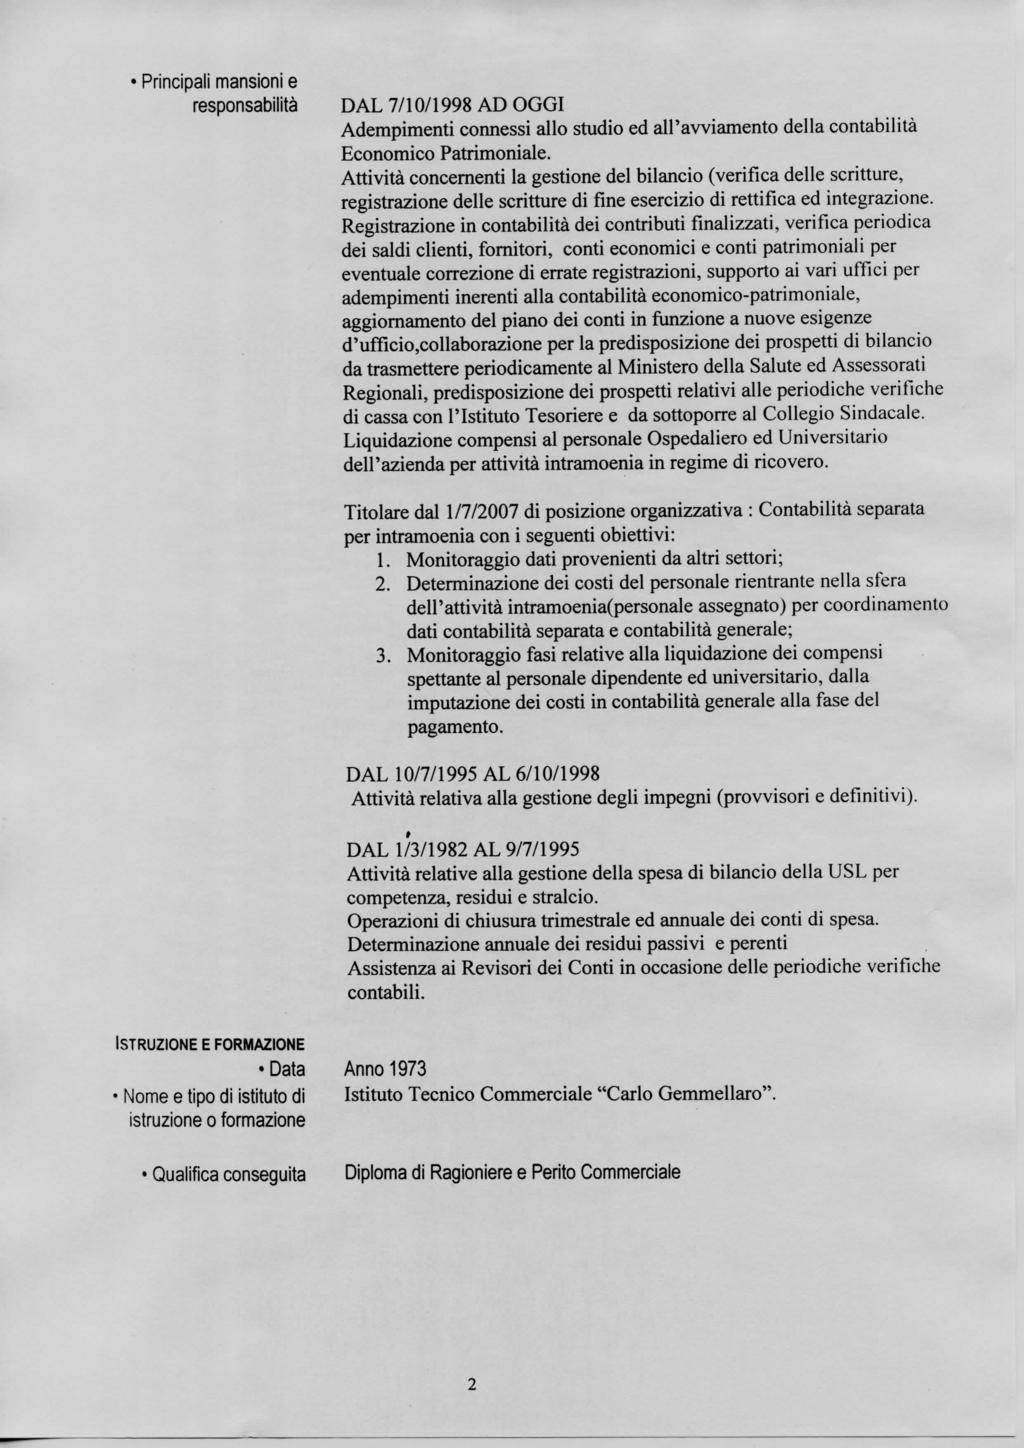 Principali mansioni e responsabilità DAL 7/10/1998 AD OGGI Adempimenti connessi allo ed all'avviamento della contabilità Economico Patrimoniale.